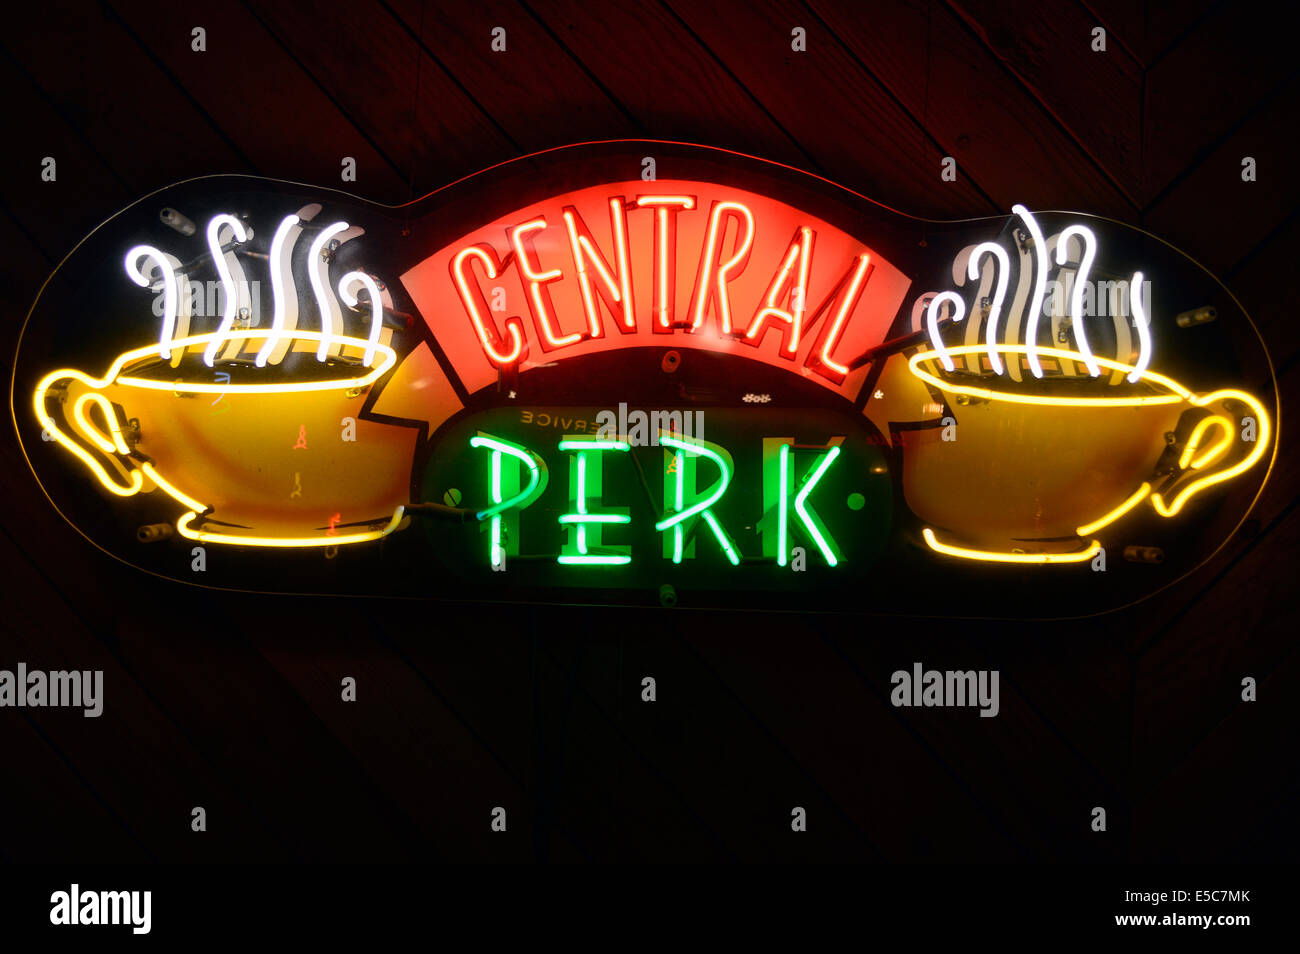 L'enseigne au néon de la "Central Perk café" utilisé dans la série télévisée Friends, à la Warner Bros Studio à Burbank, Los Angele Banque D'Images